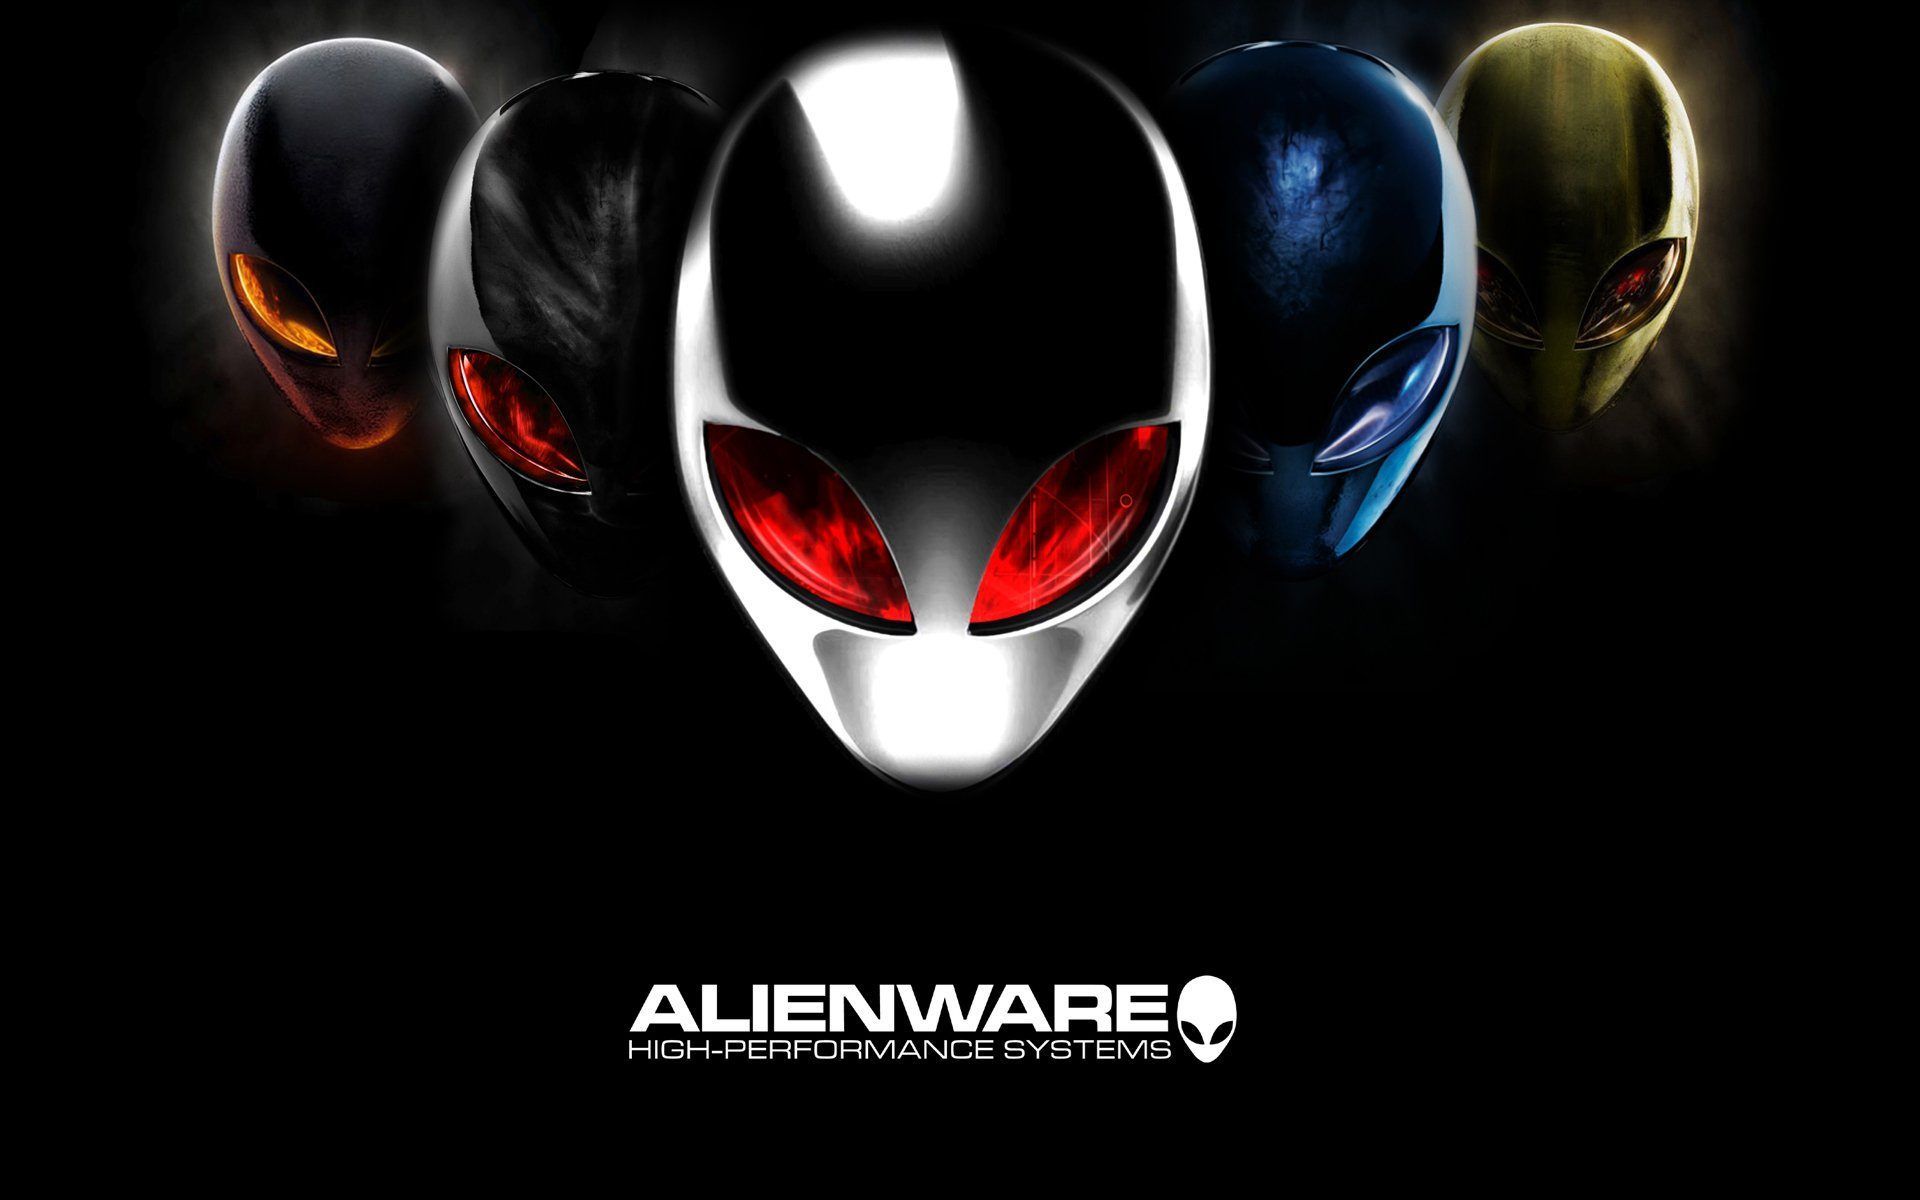 Alienware Live Wallpapers